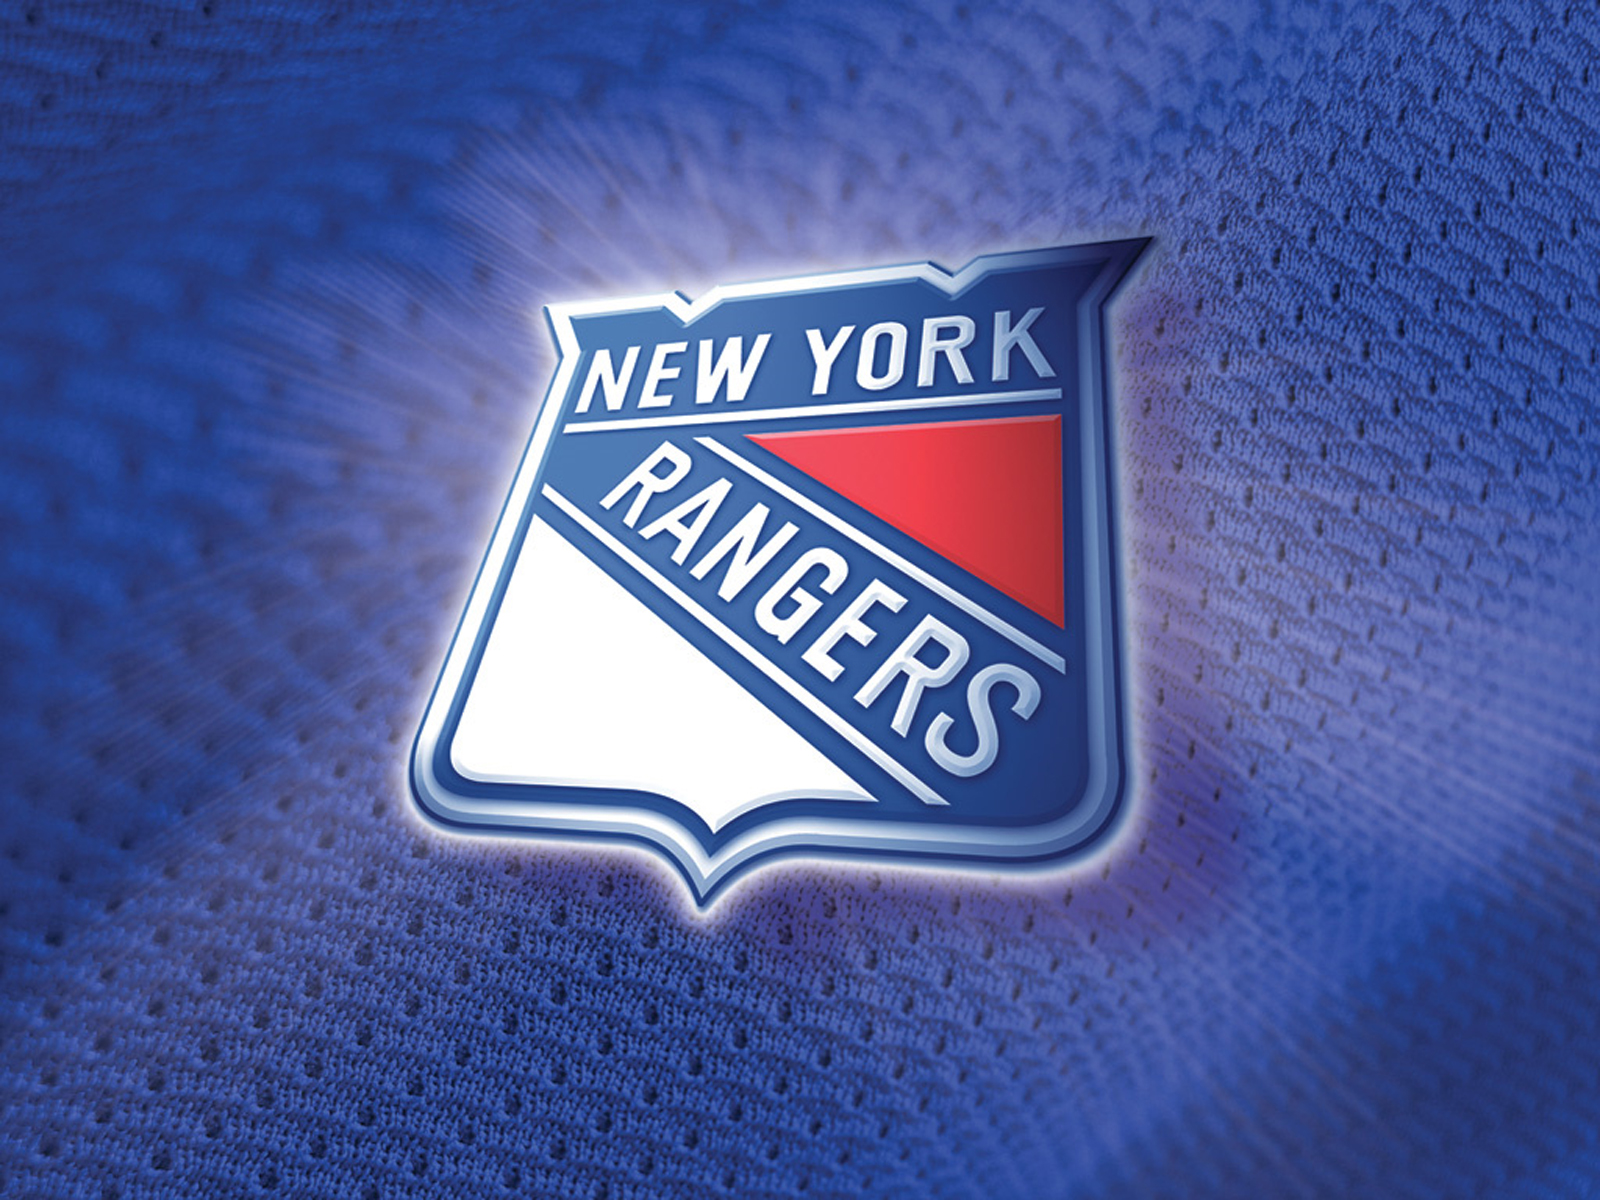 New York Rangers Hockey Puter Desktop Wallpaper Pictures Image